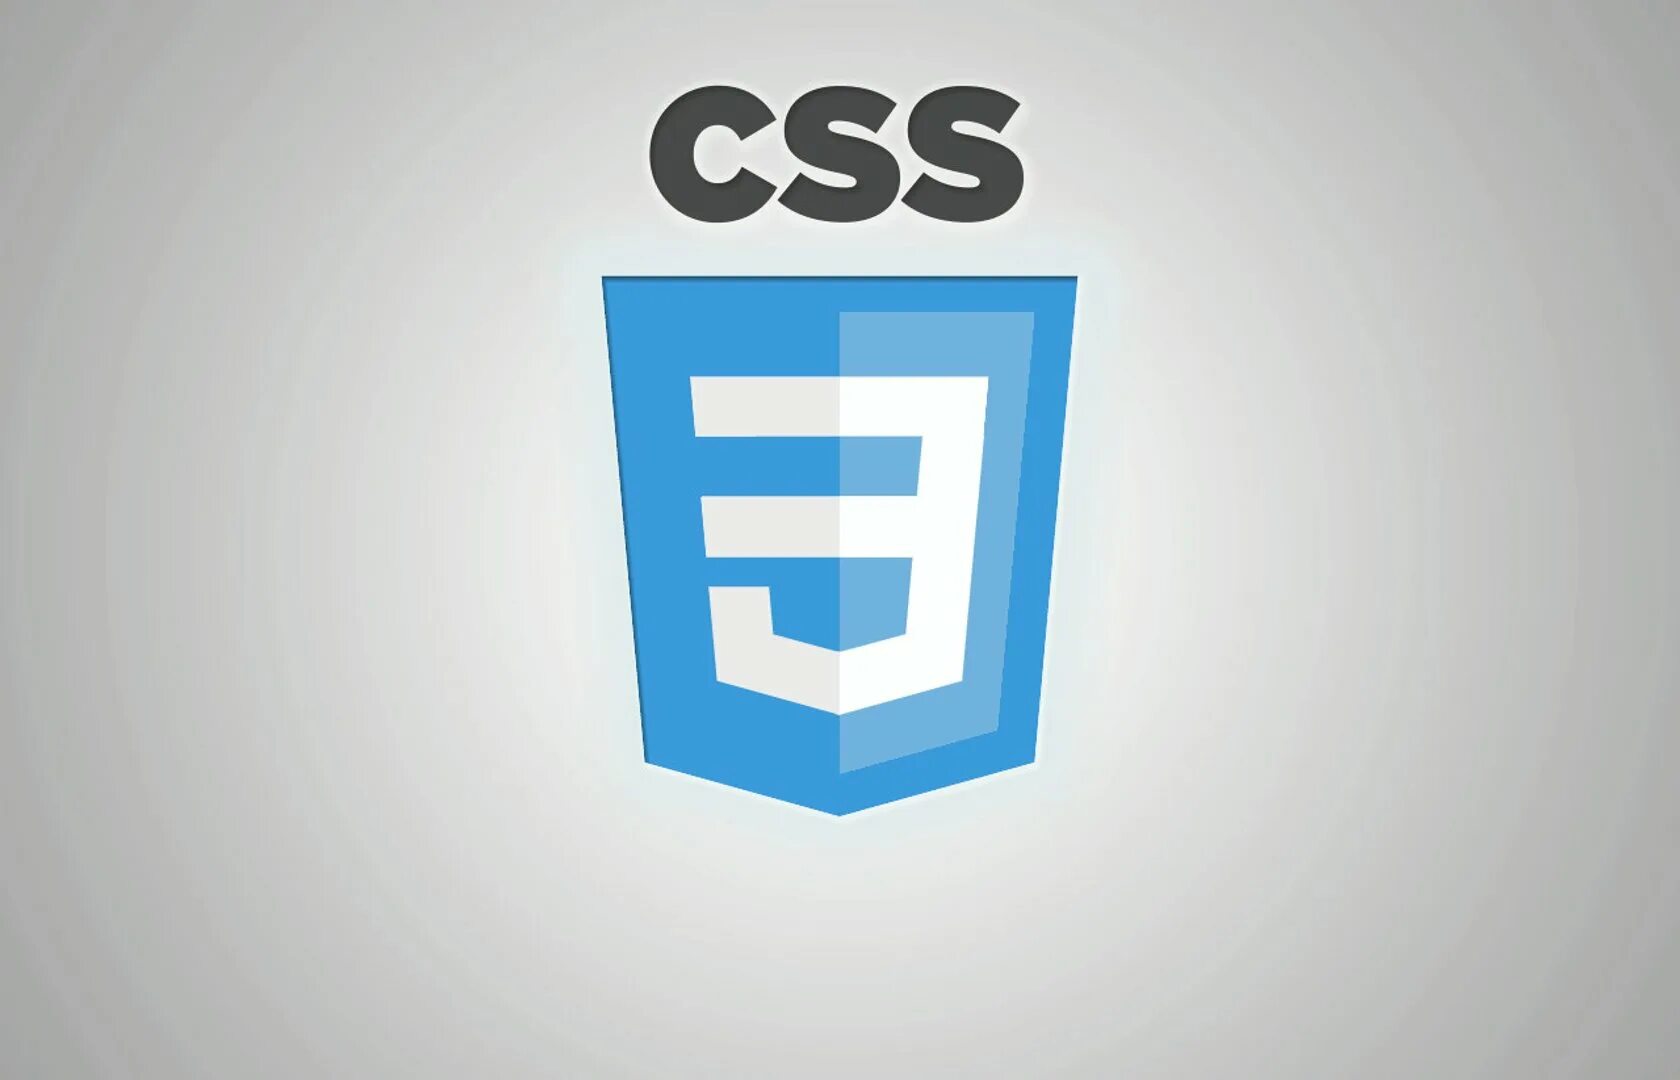 Css3 логотип. Значок css3. CSS эмблема. CSS лого. Css сети